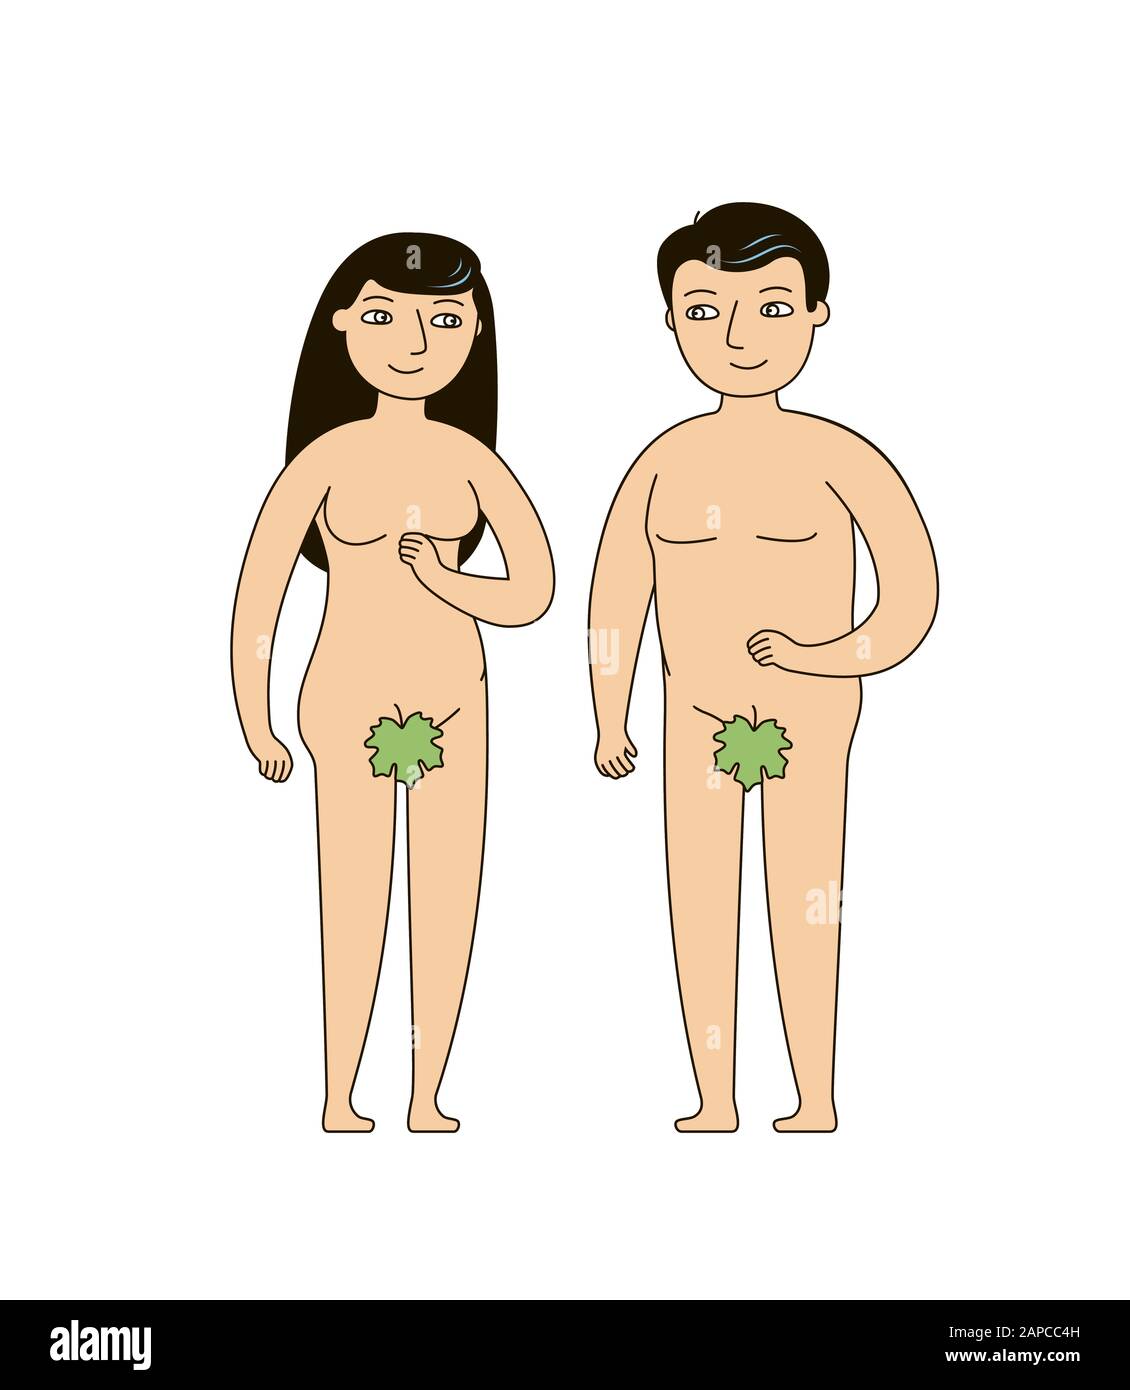 Adam und Eva. Biblische Erzählung des menschlichen Ursprungs. Vektorgrafik Stock Vektor